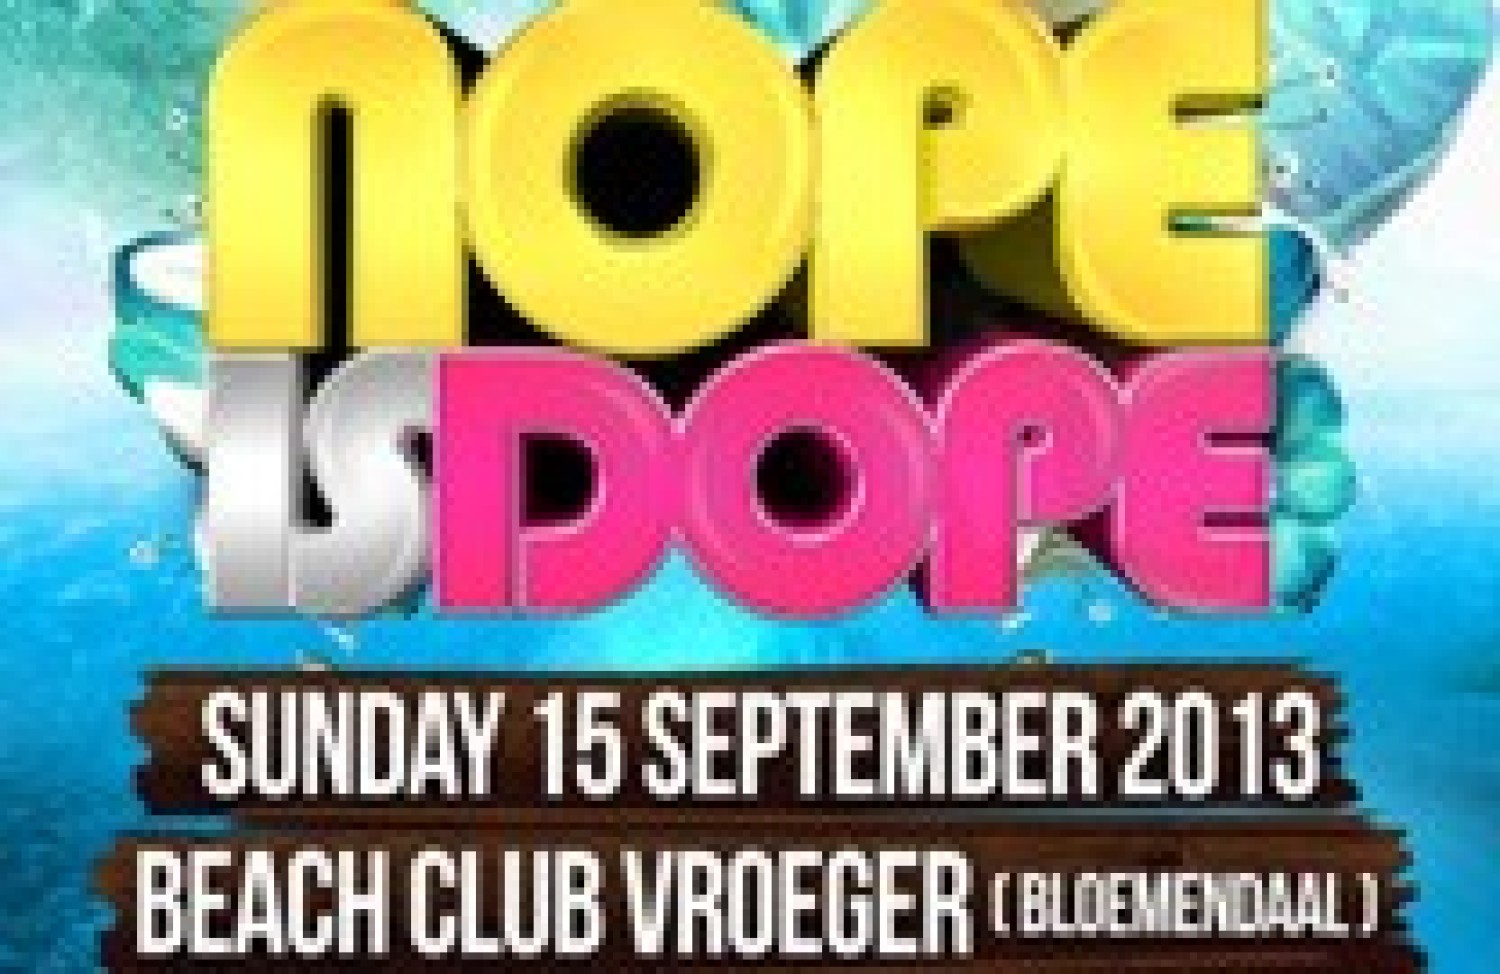 Party report: NopeisDope, Beachclub Vroeger, Bloemendaal, 15 september 2013